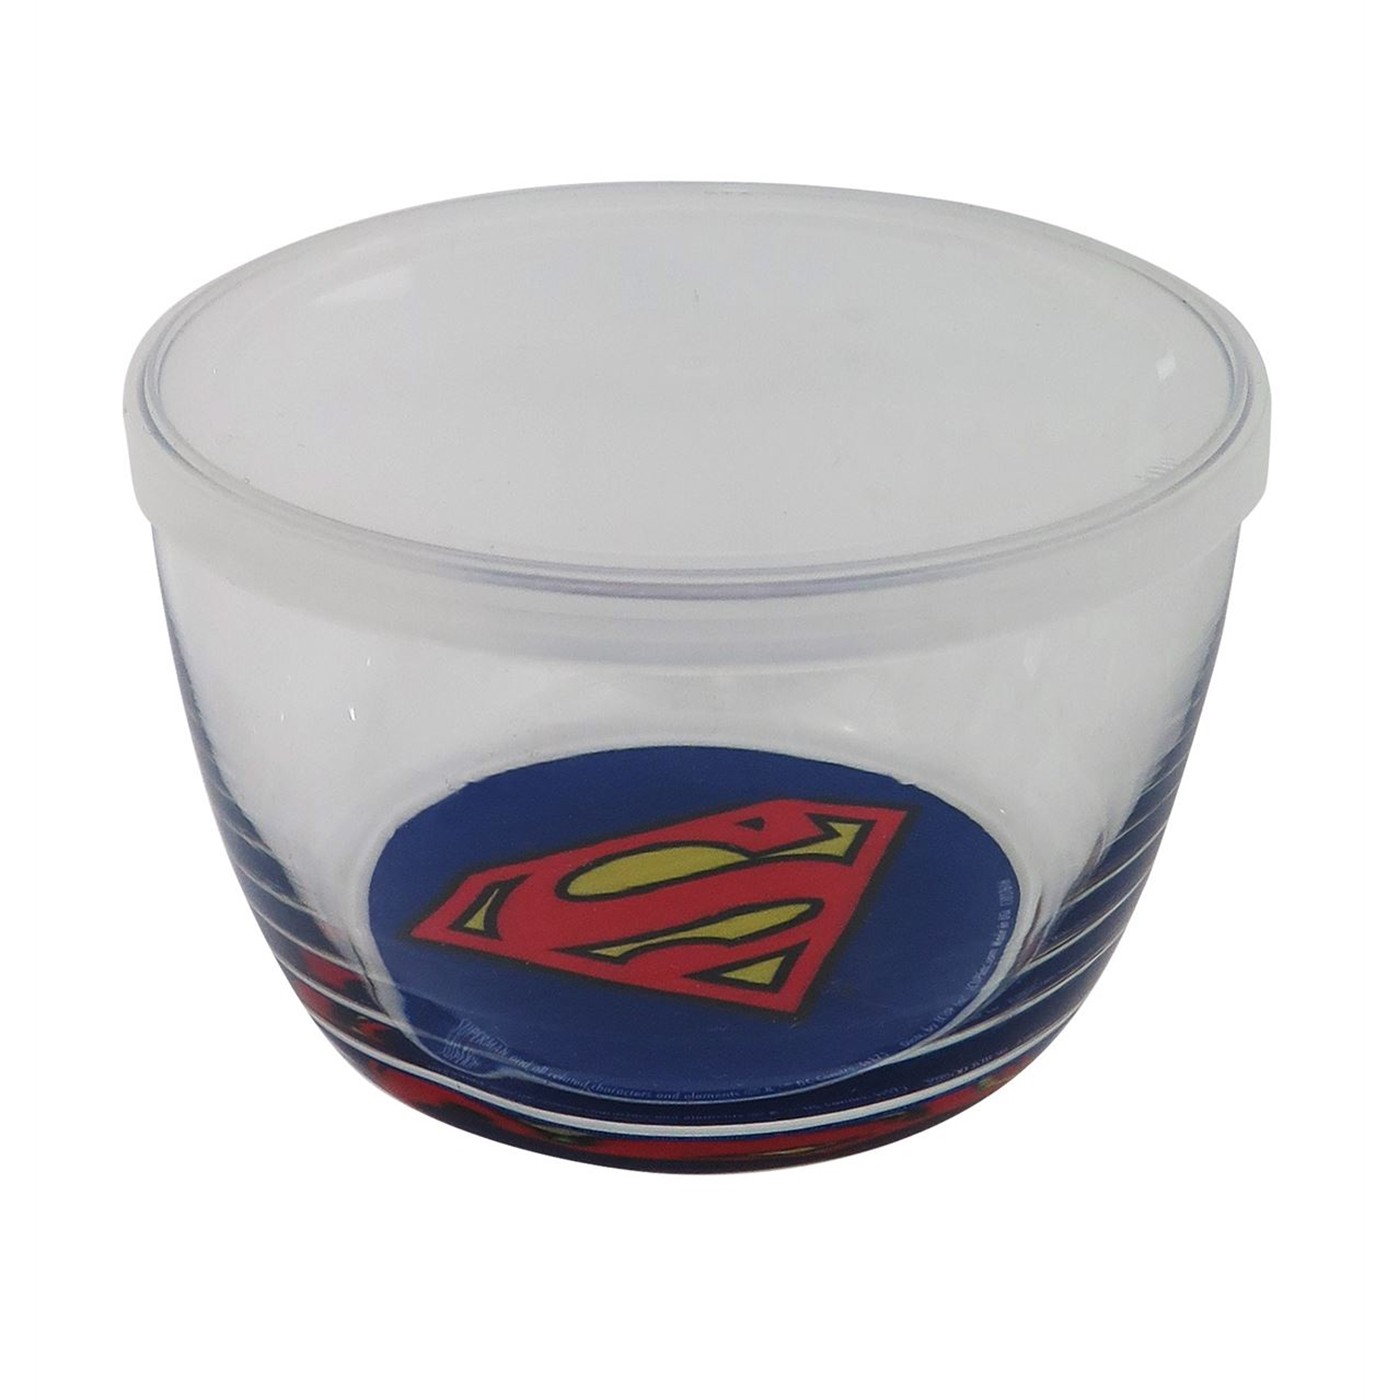 Superman 16oz Glass Storage Bowl with Lid